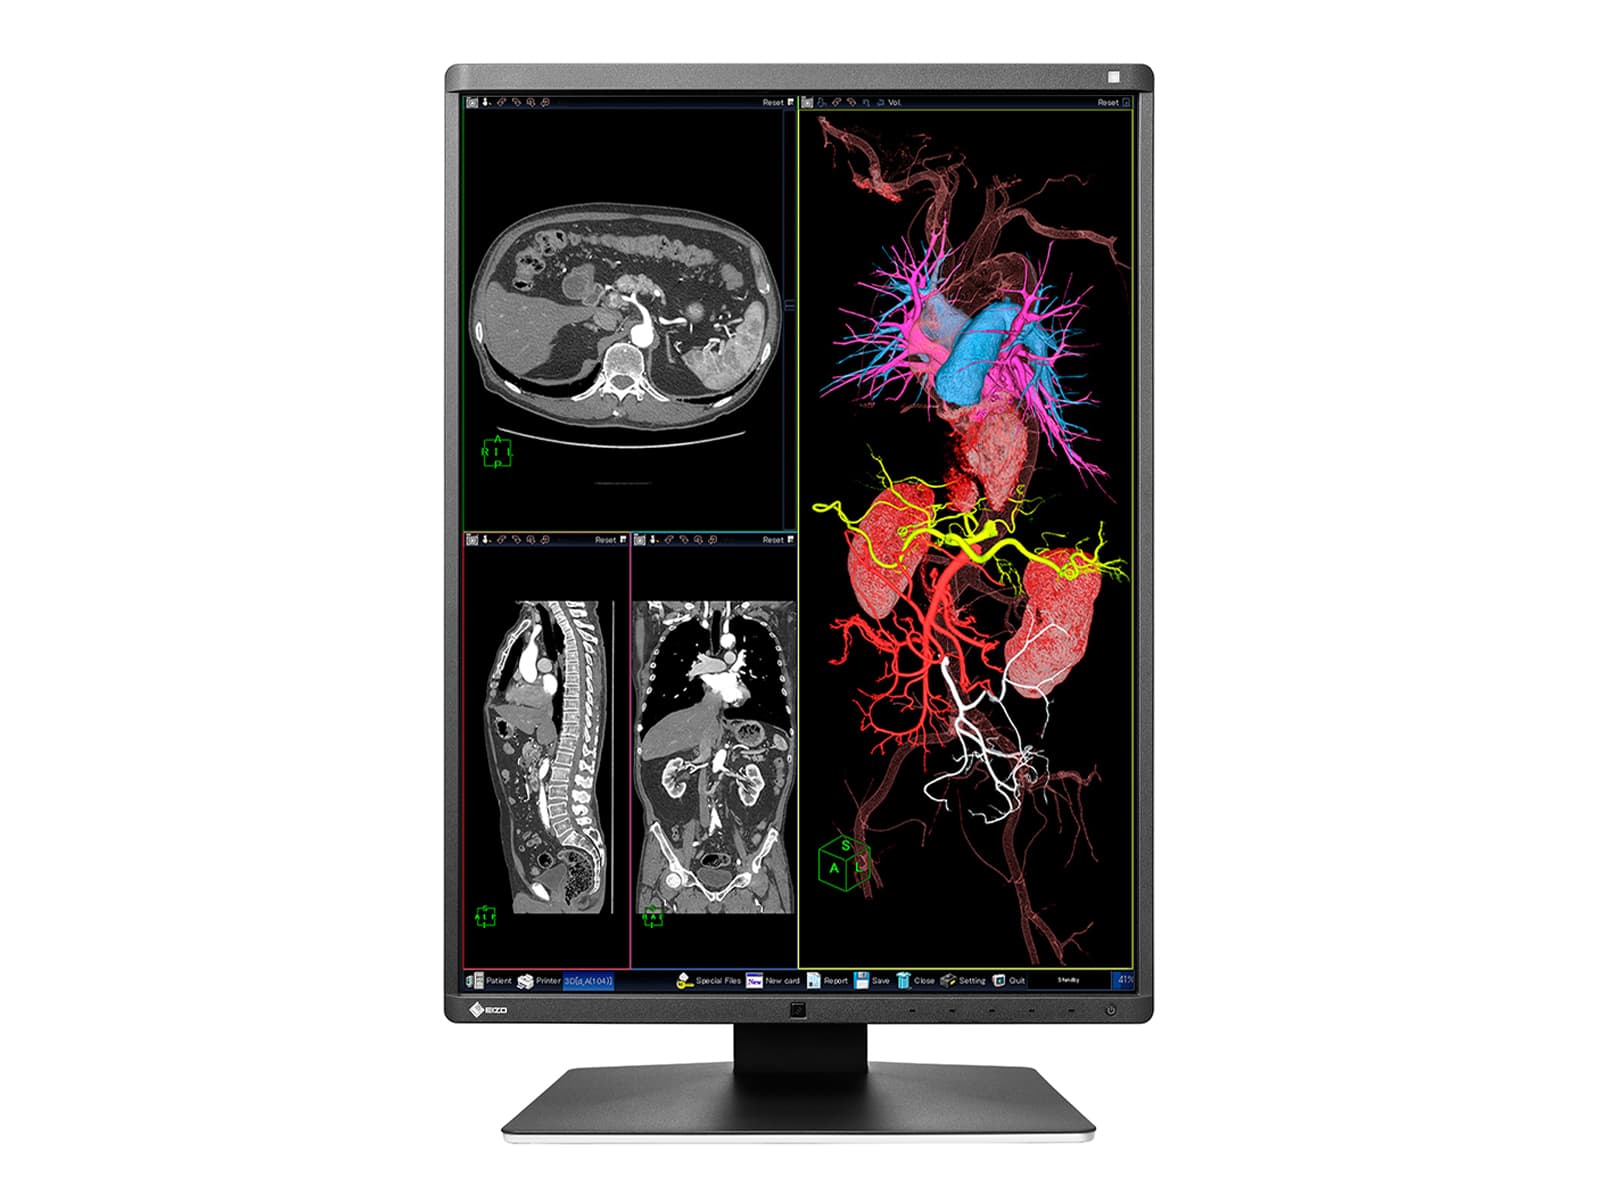 Eizo RadiForce RX350 3MP 21" Color LED General Radiology Diagnostic Display (RX350) Monitors.com 